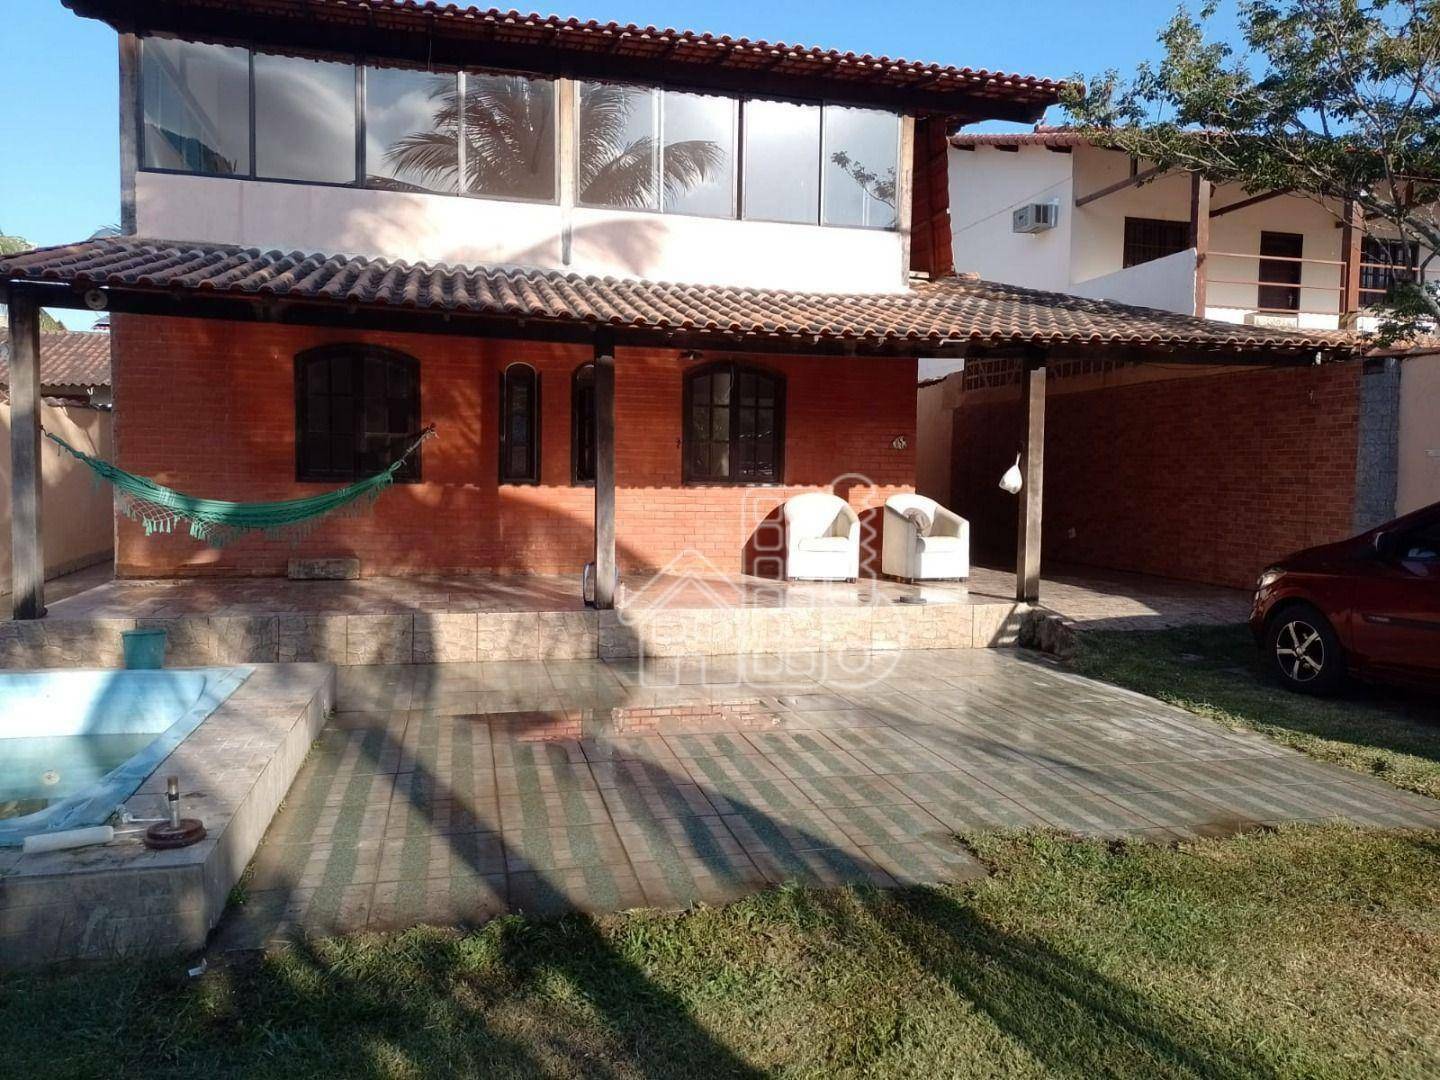 Casa com 3 quartos à venda, 110 m² por R$ 410.000 - Recanto de Itaipuaçu - Maricá/RJ